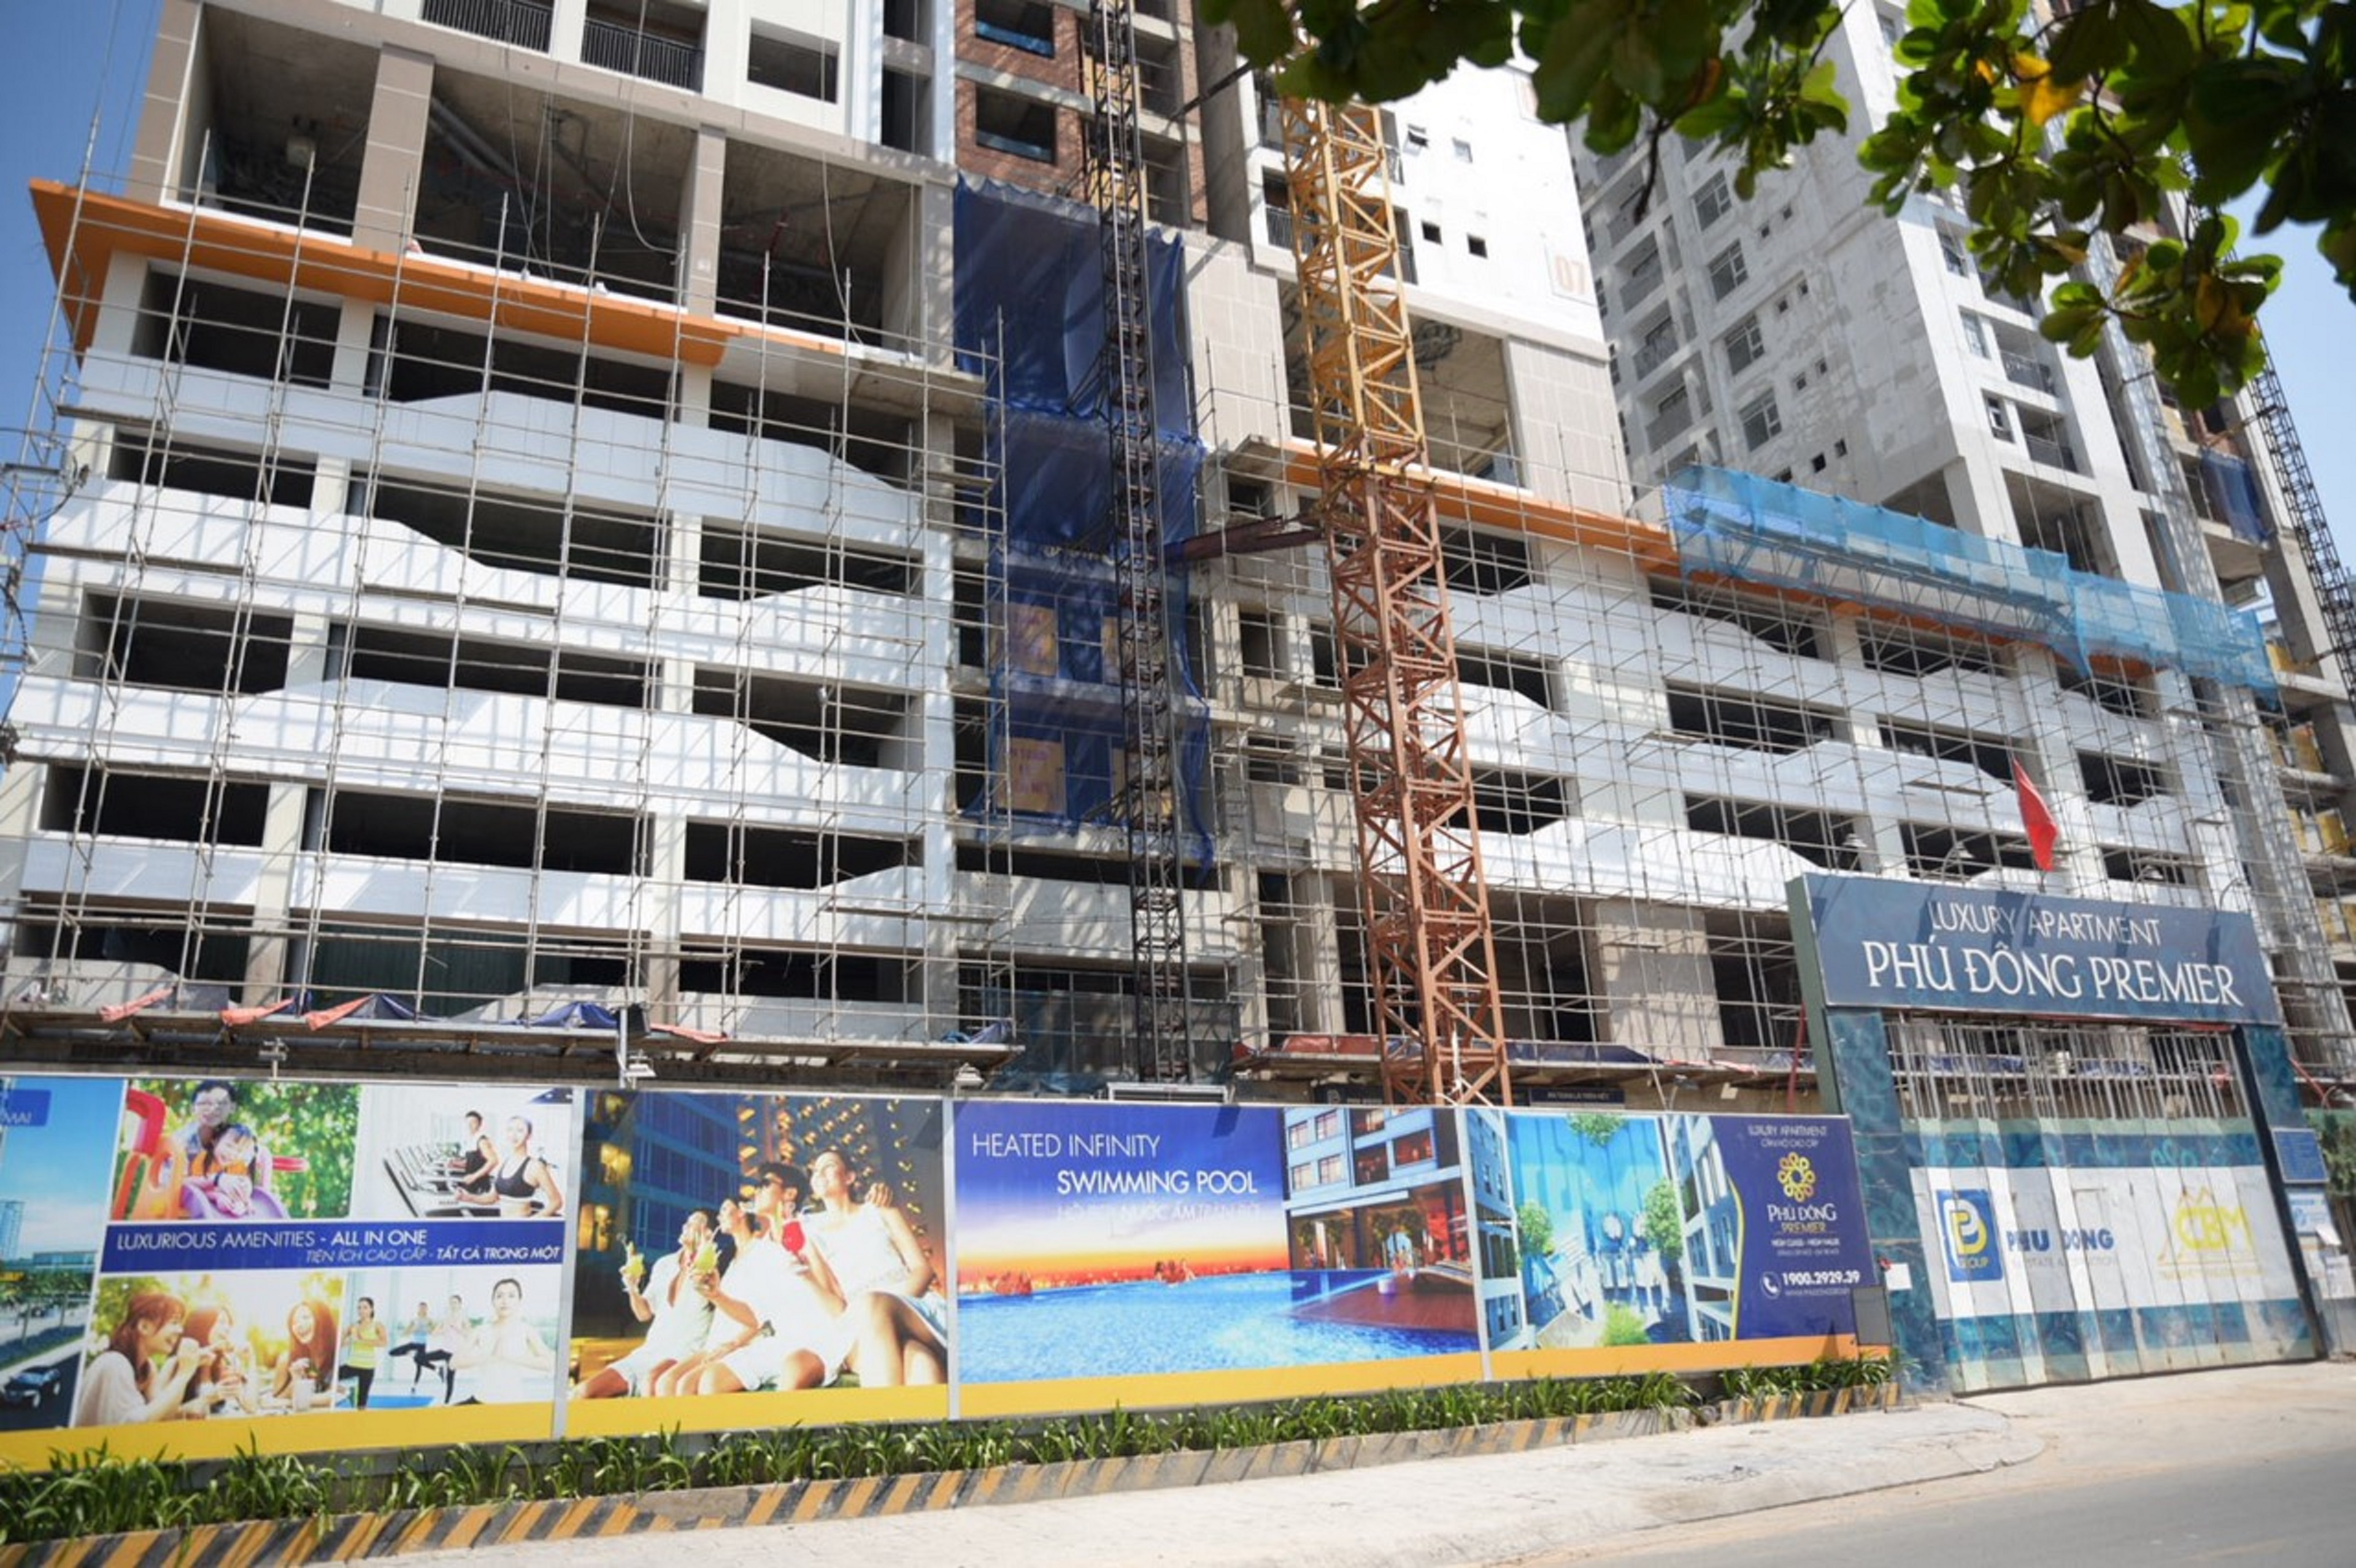 Phú Đông Group thông báo bị giả mạo thông tin chào bán căn hộ Phú Đông Premier